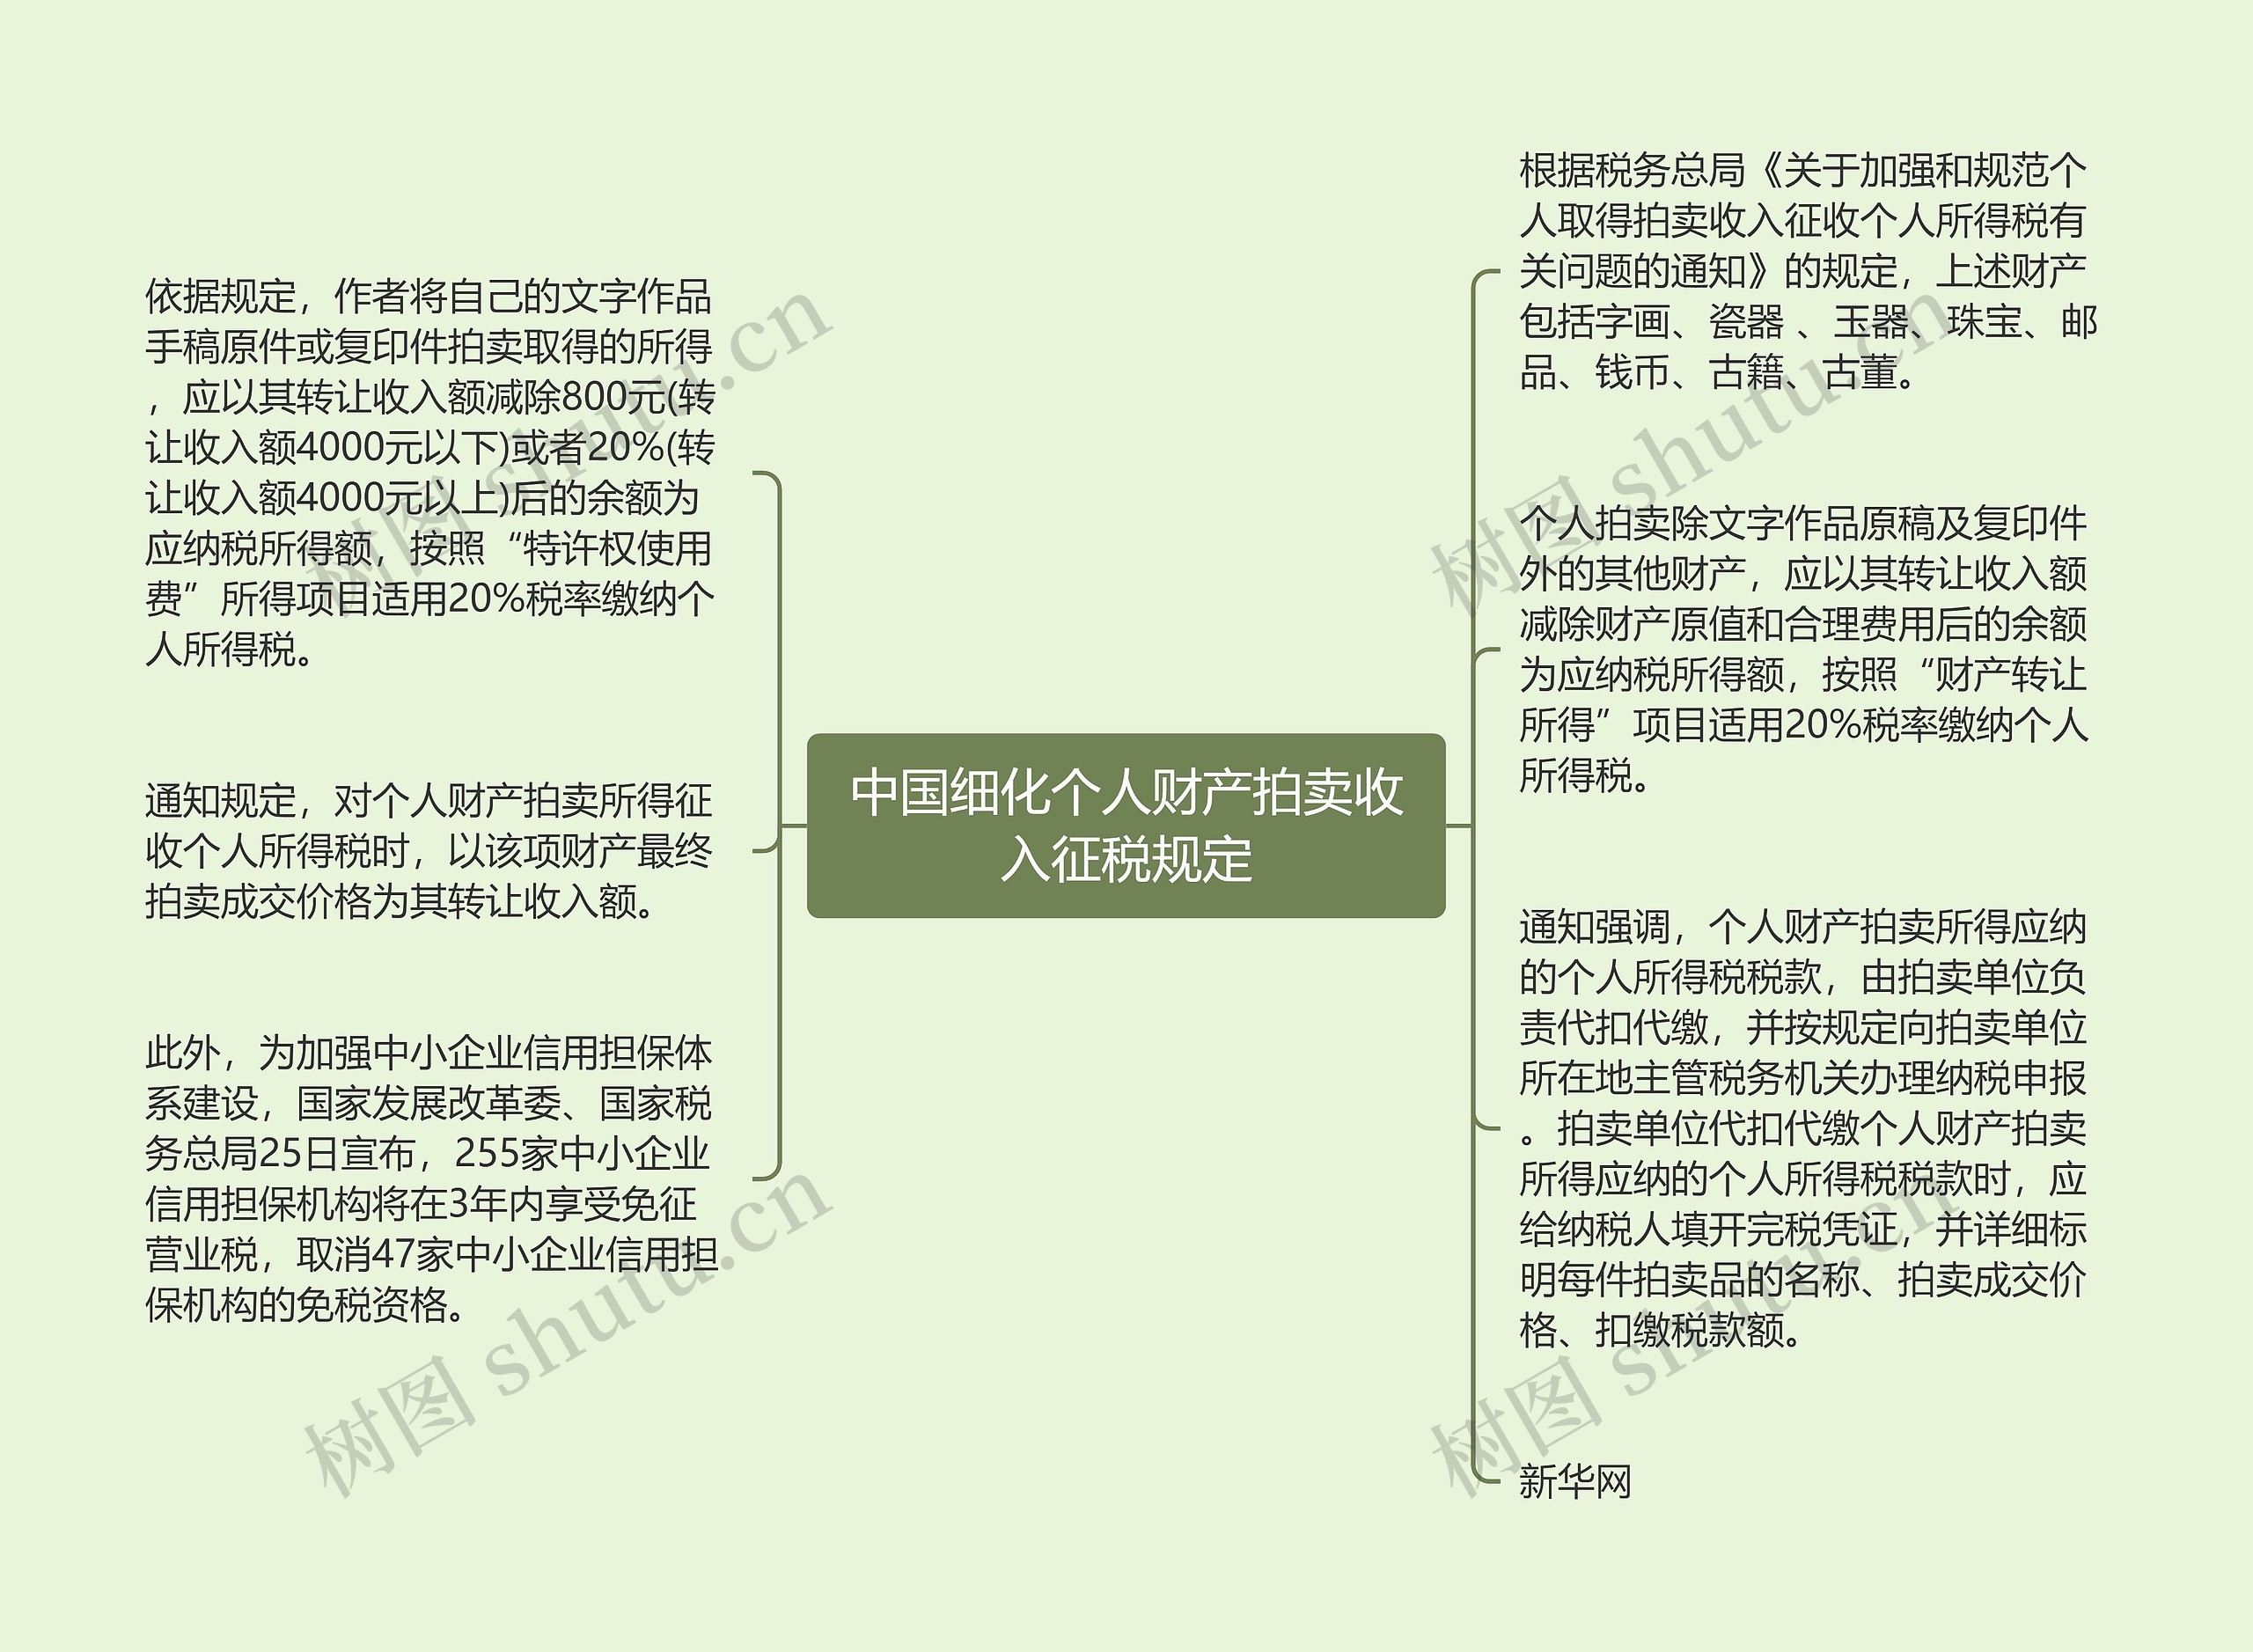 中国细化个人财产拍卖收入征税规定